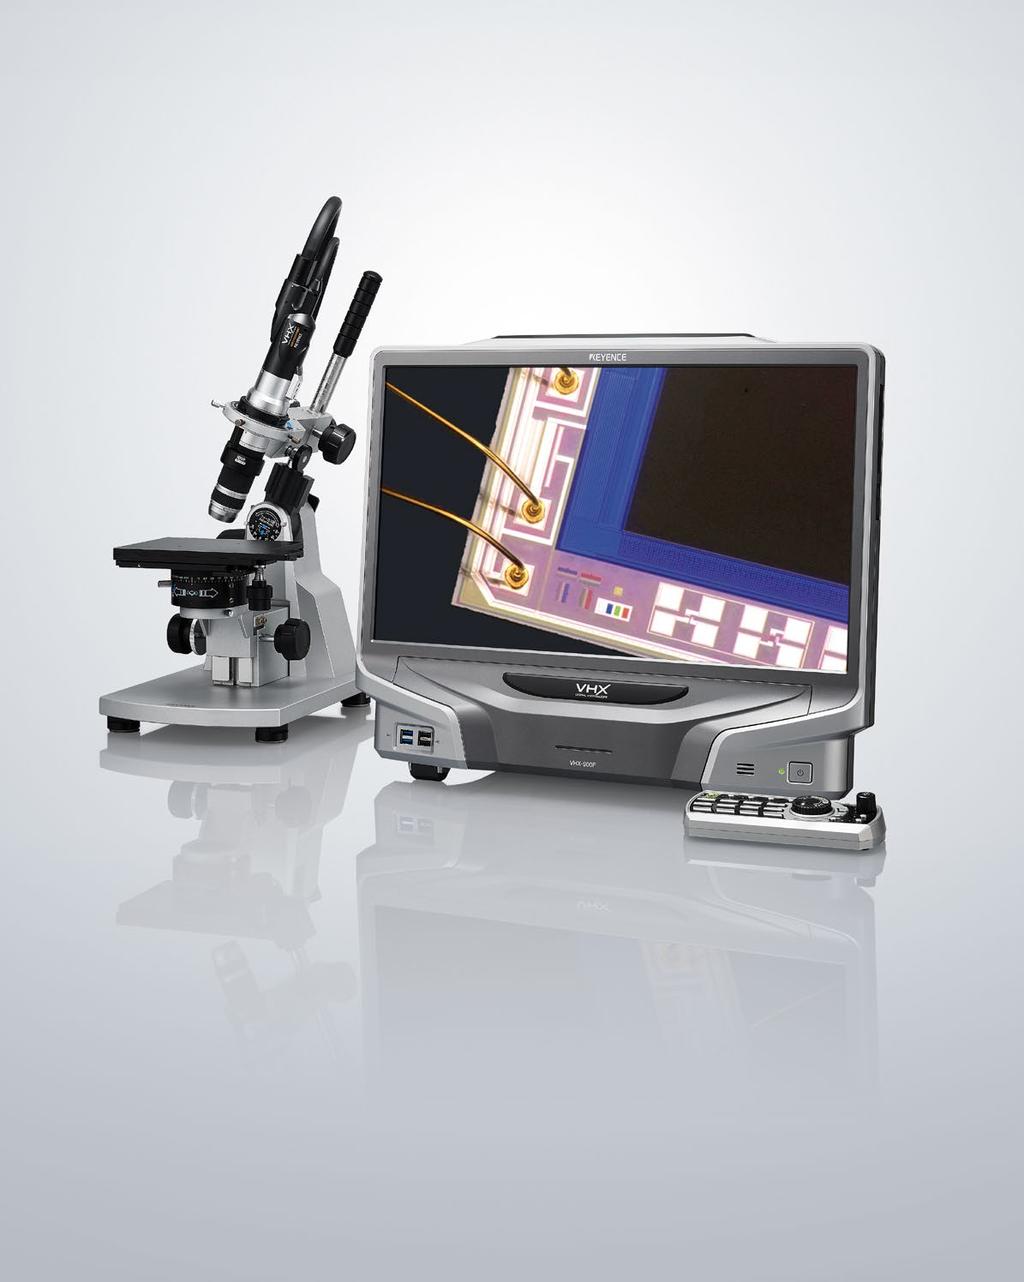 エントリーモデル VHX-900F よく使う機能を シンプルな操作性で実現 深い フリーアングル 観る 録る 測るが 深度合成 & 被写界深度 観察 1 台に集約 3D 表示機能 光学顕微鏡と比べて